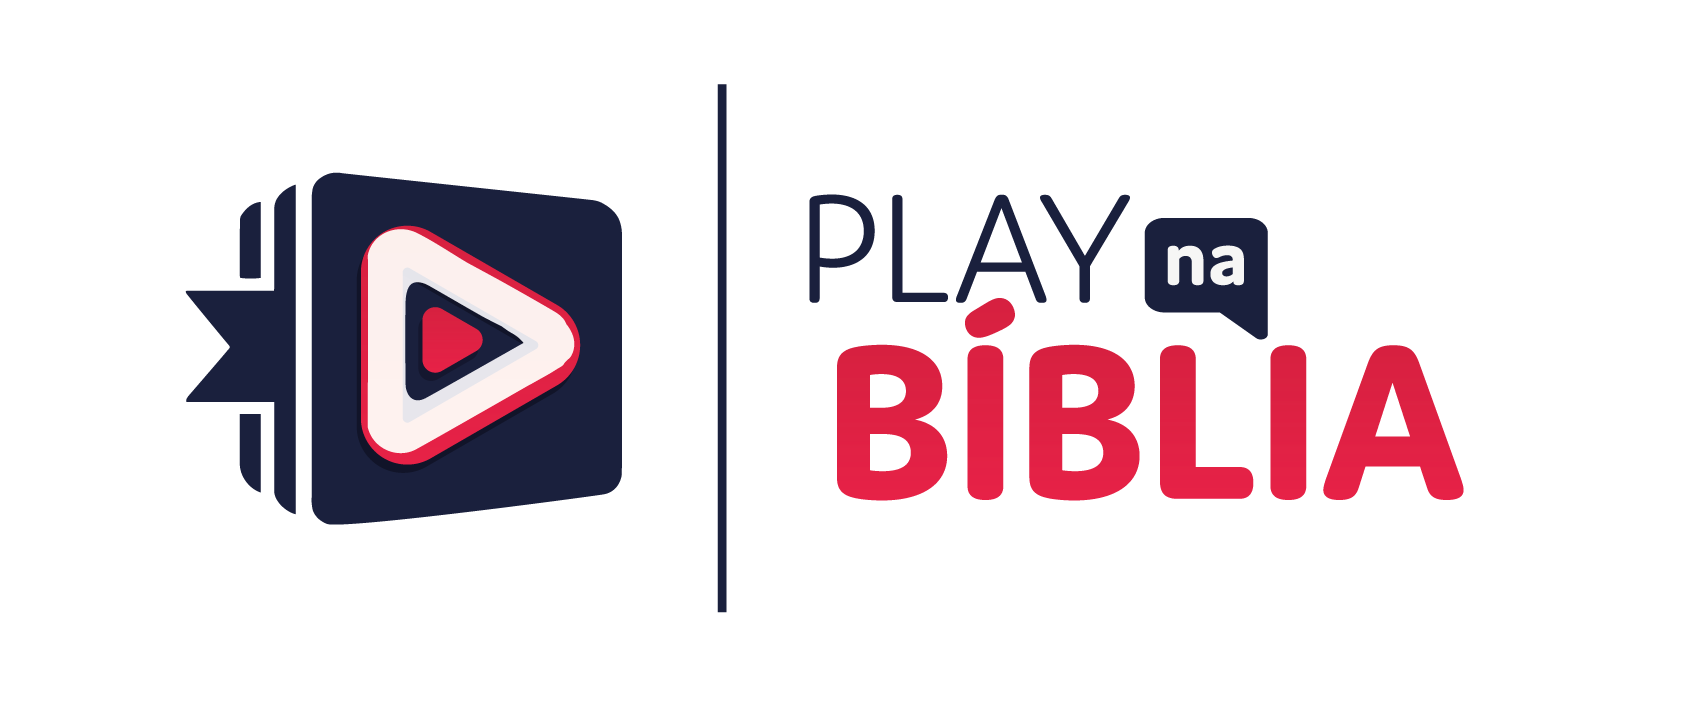 Play na Bíblia